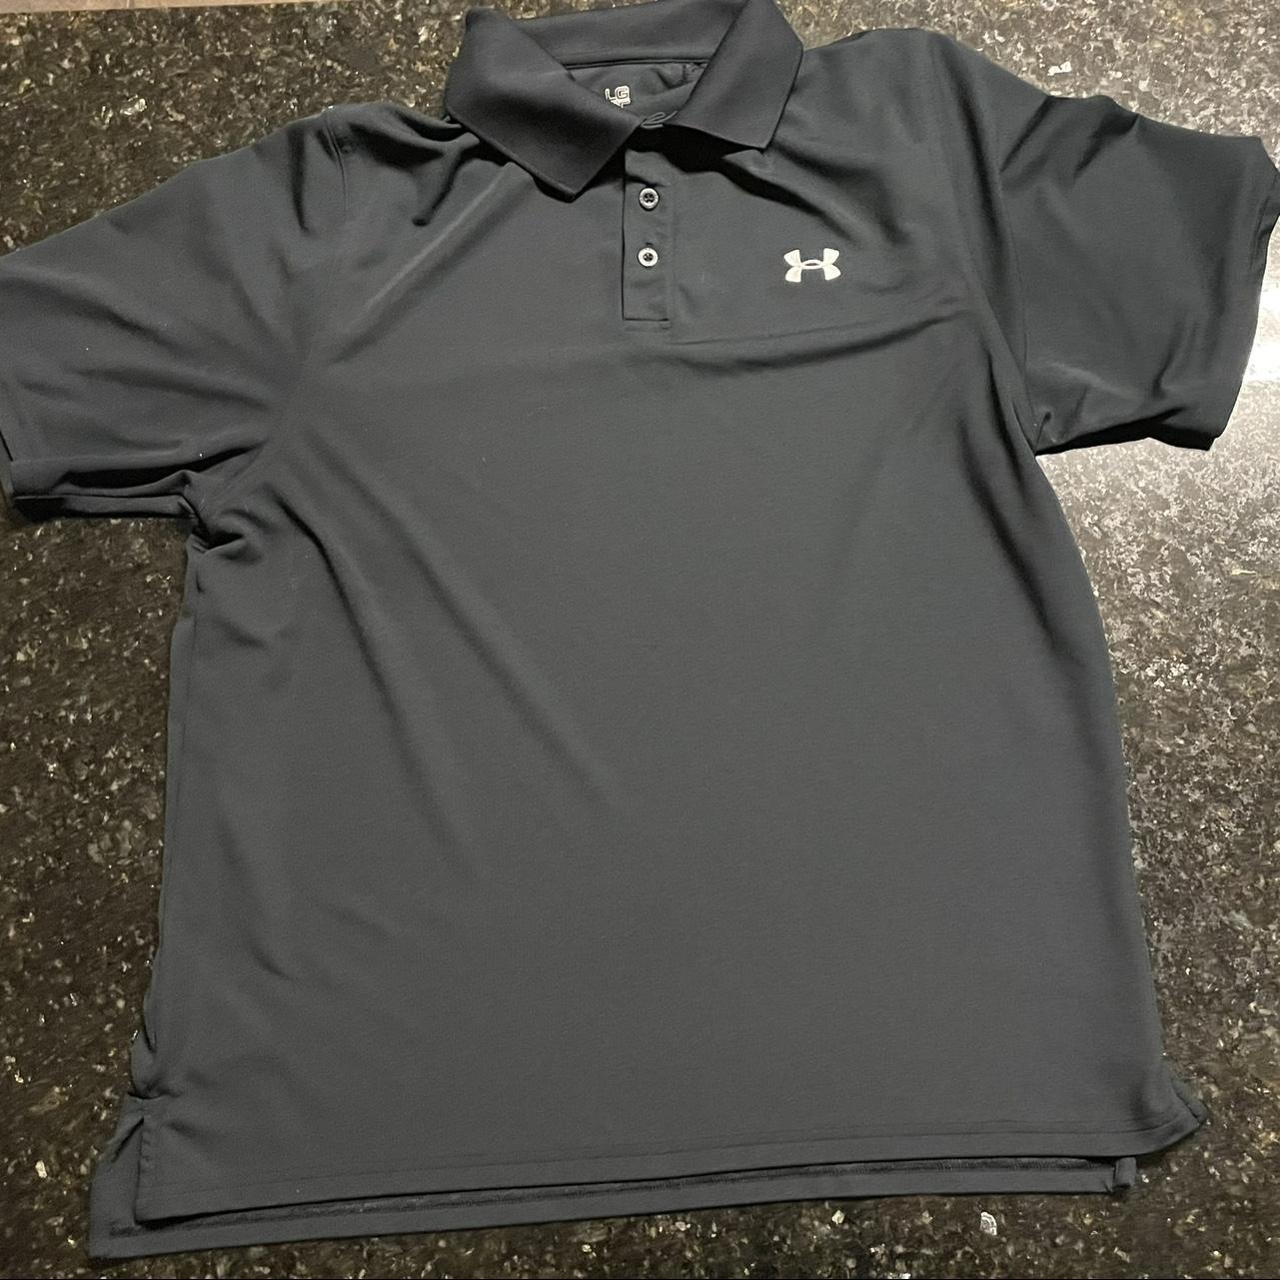 Under Armour golf shirt size LG - Depop